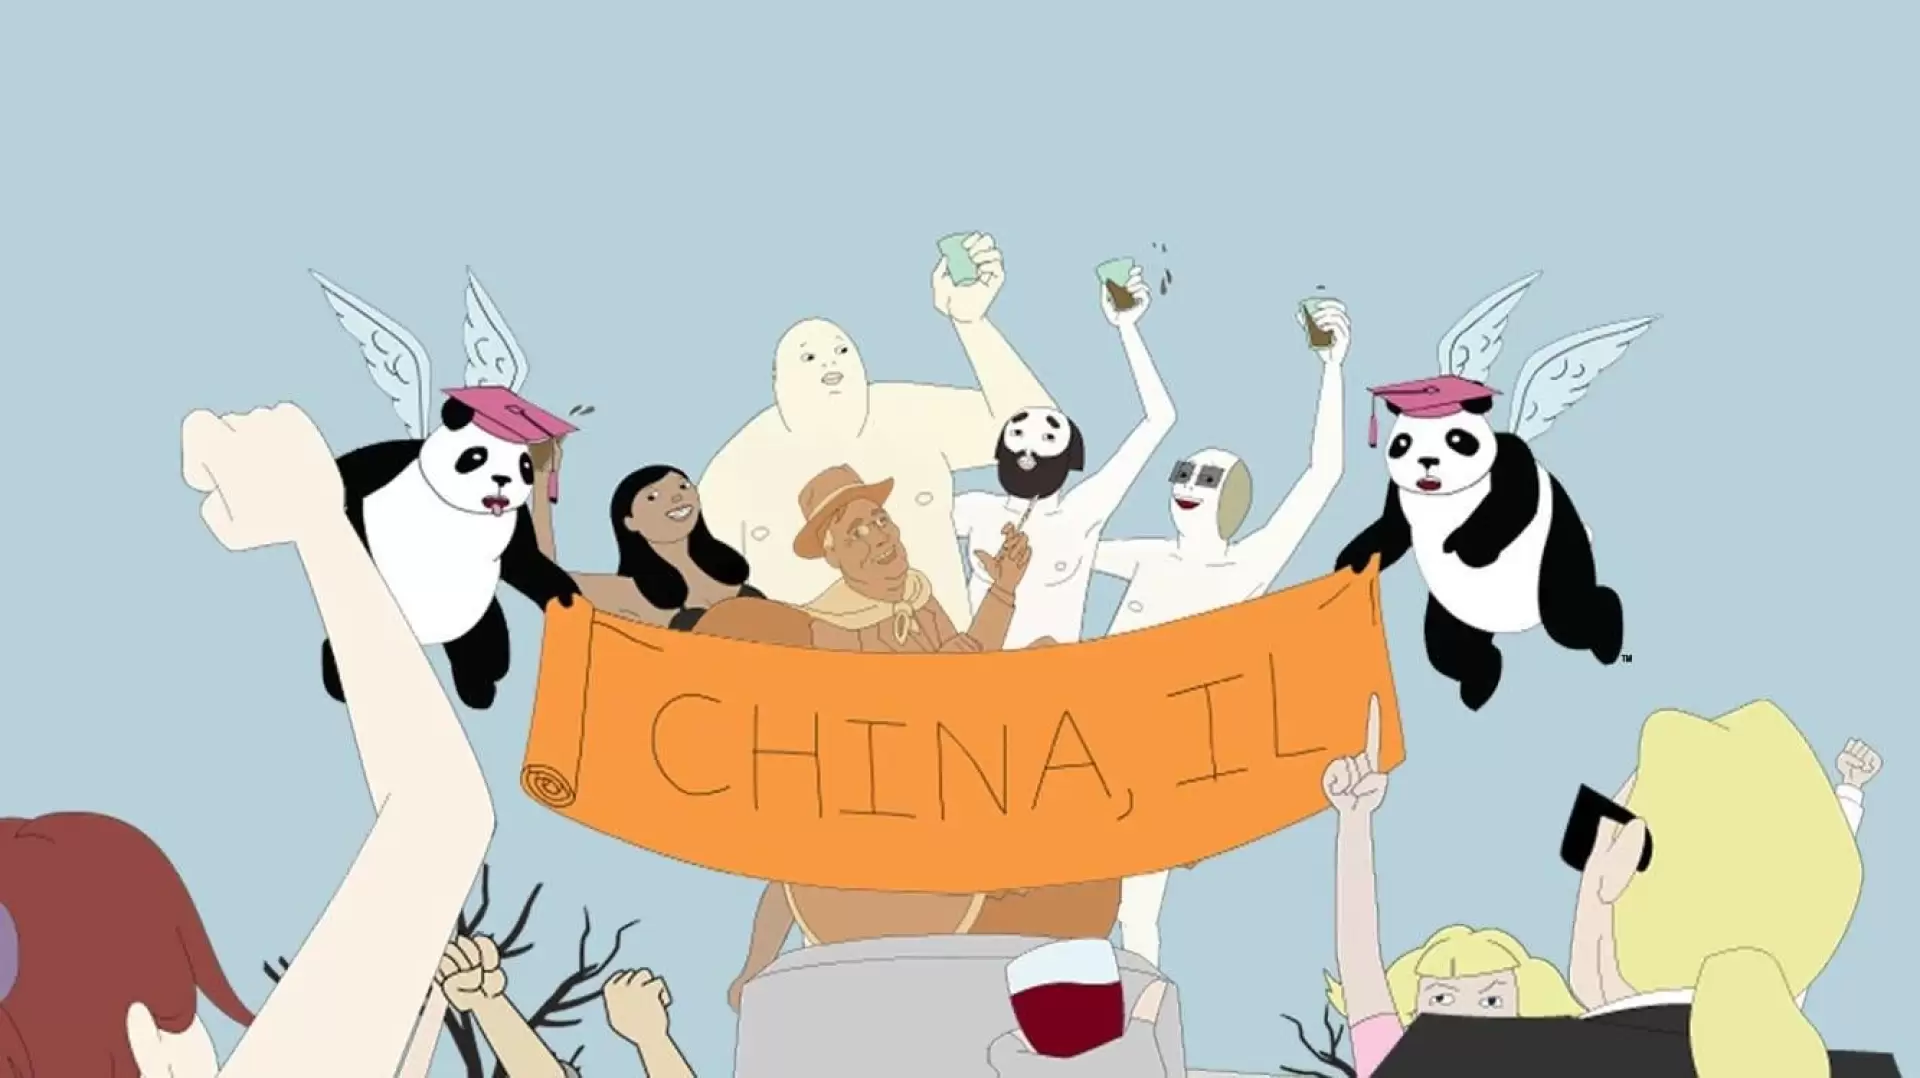 دانلود انیمیشن China, IL 2008